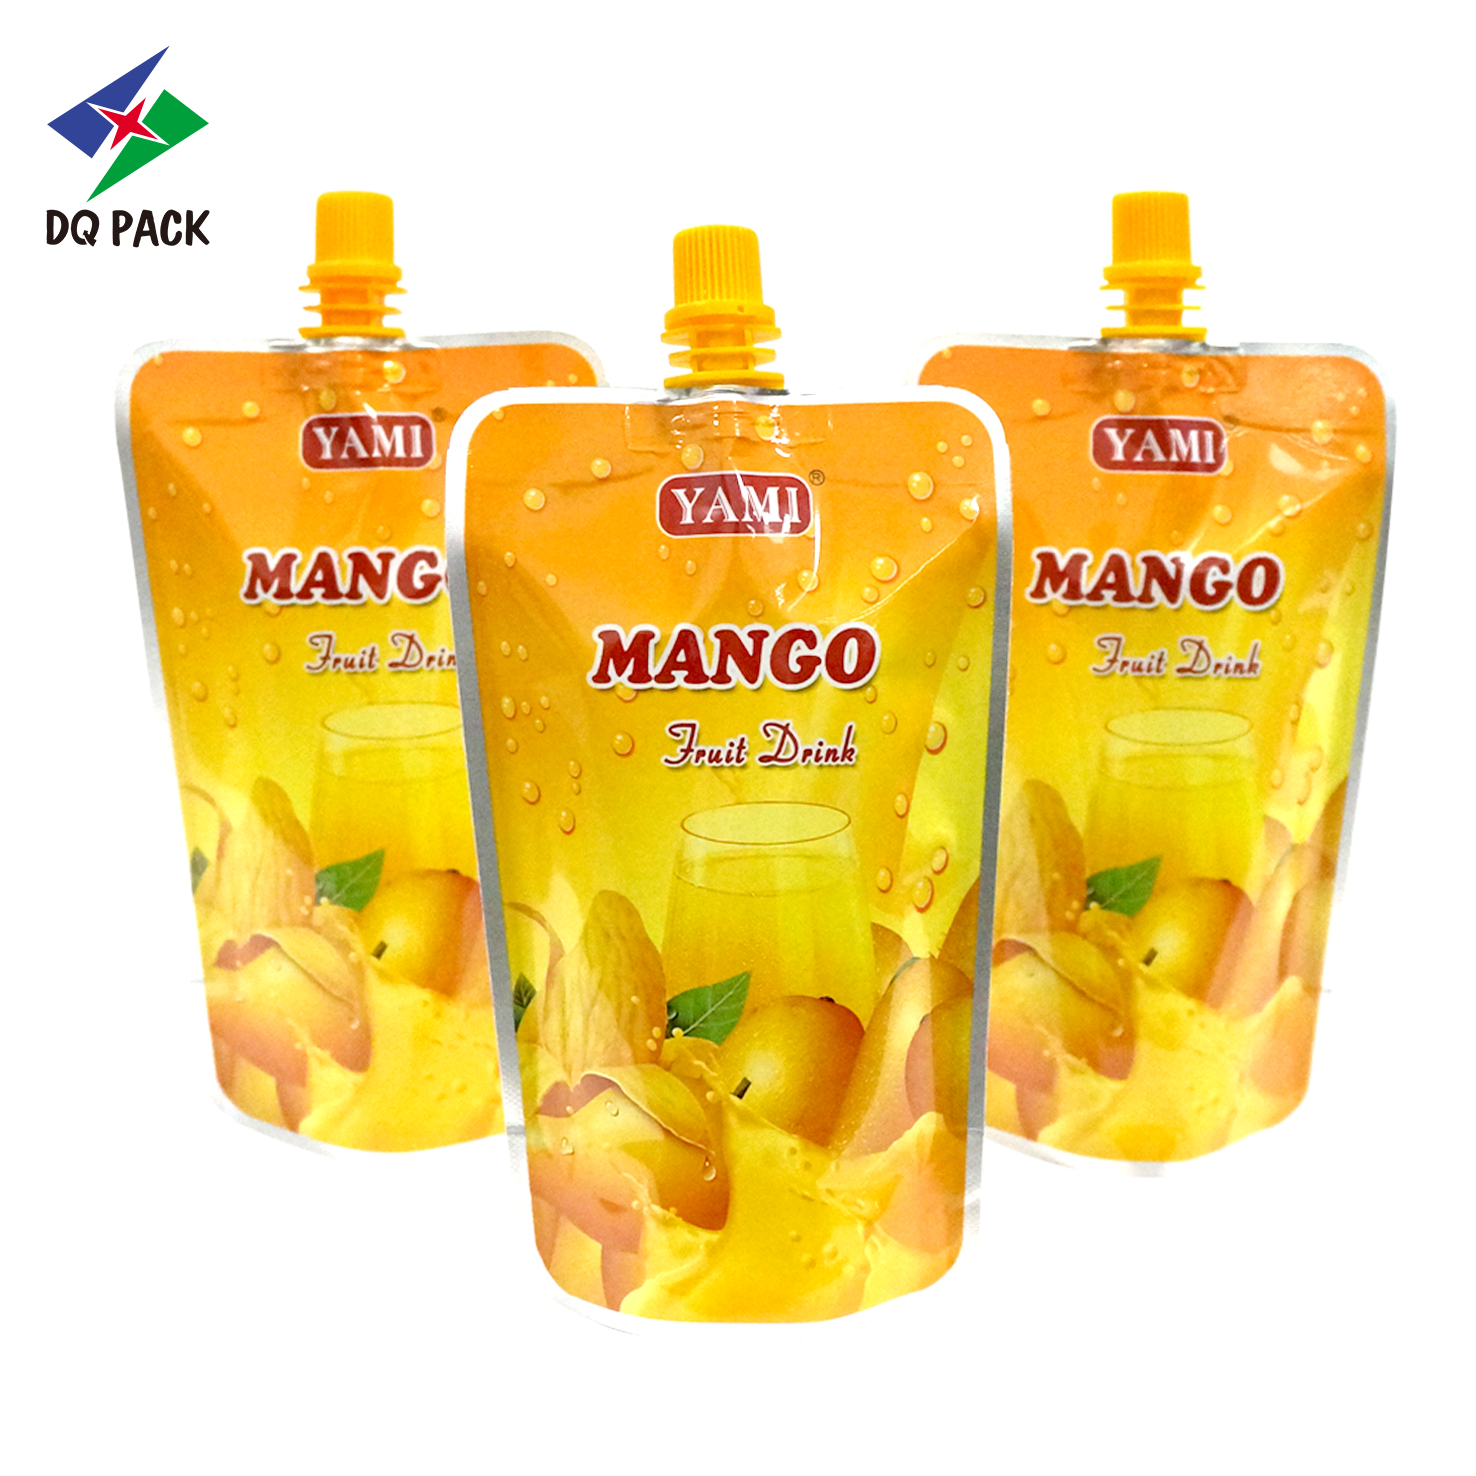 DQ PACK Glossy Surface 250ML Chikwama cha Mango Juice Packaging Chikwama cha Phulasitiki Yamadzimadzi Imirirani Thumba Lachipatso Losatayira Yogurt Doypack